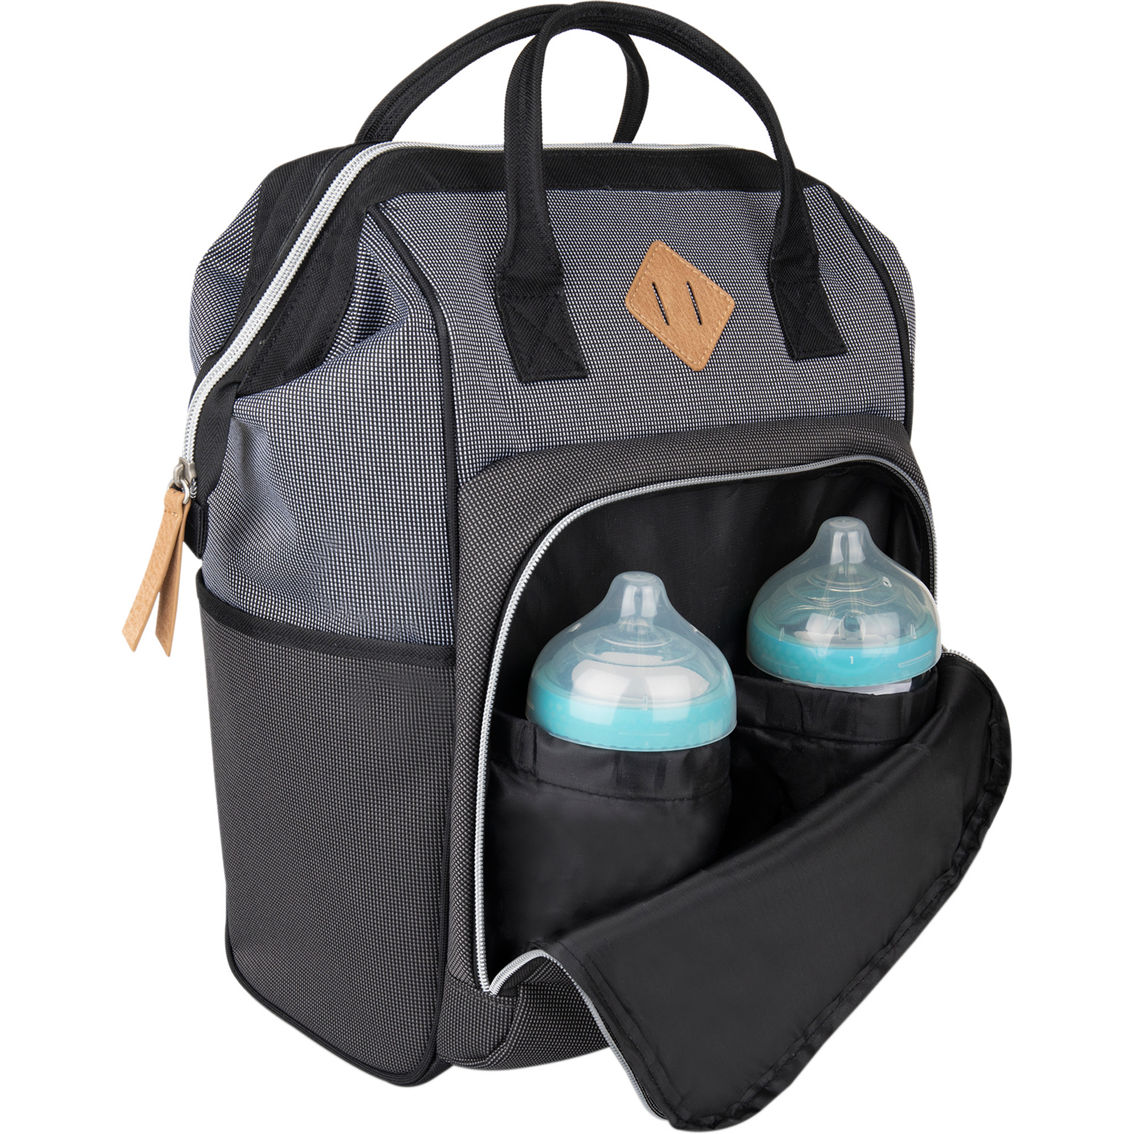 Baby Boom Gear Backpack Diaper Bag, Grey Tonal - Image 2 of 3